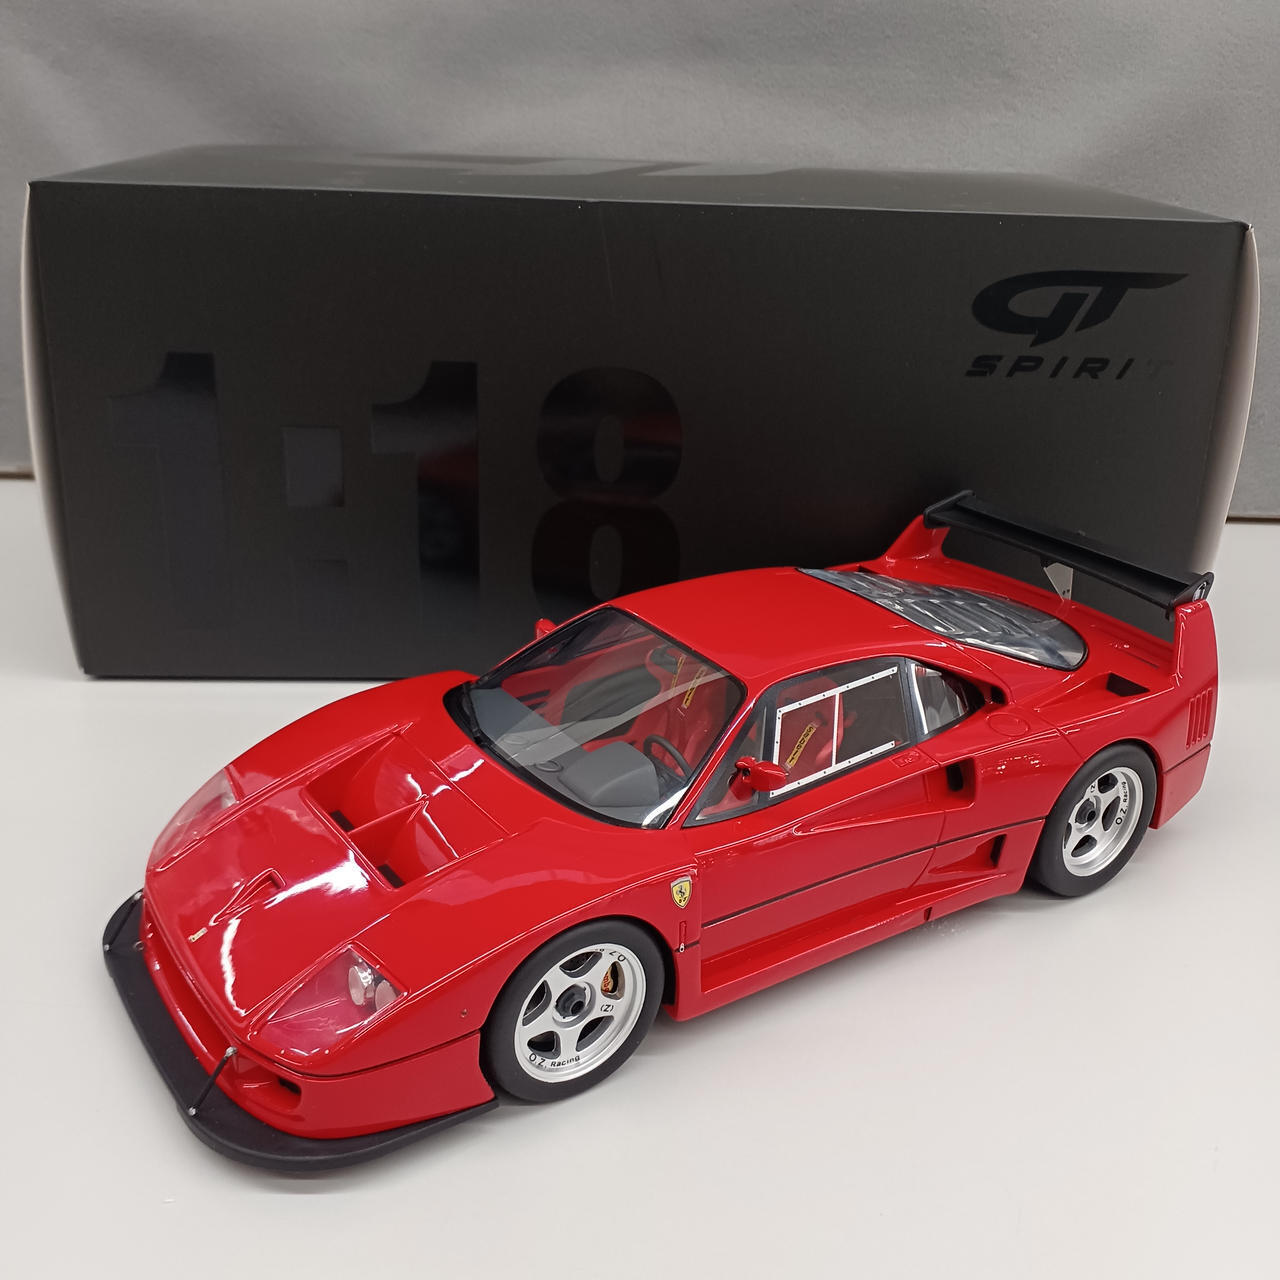 Kyosho Ferrari F40 Lm 1/18 Scale Car 0519-40